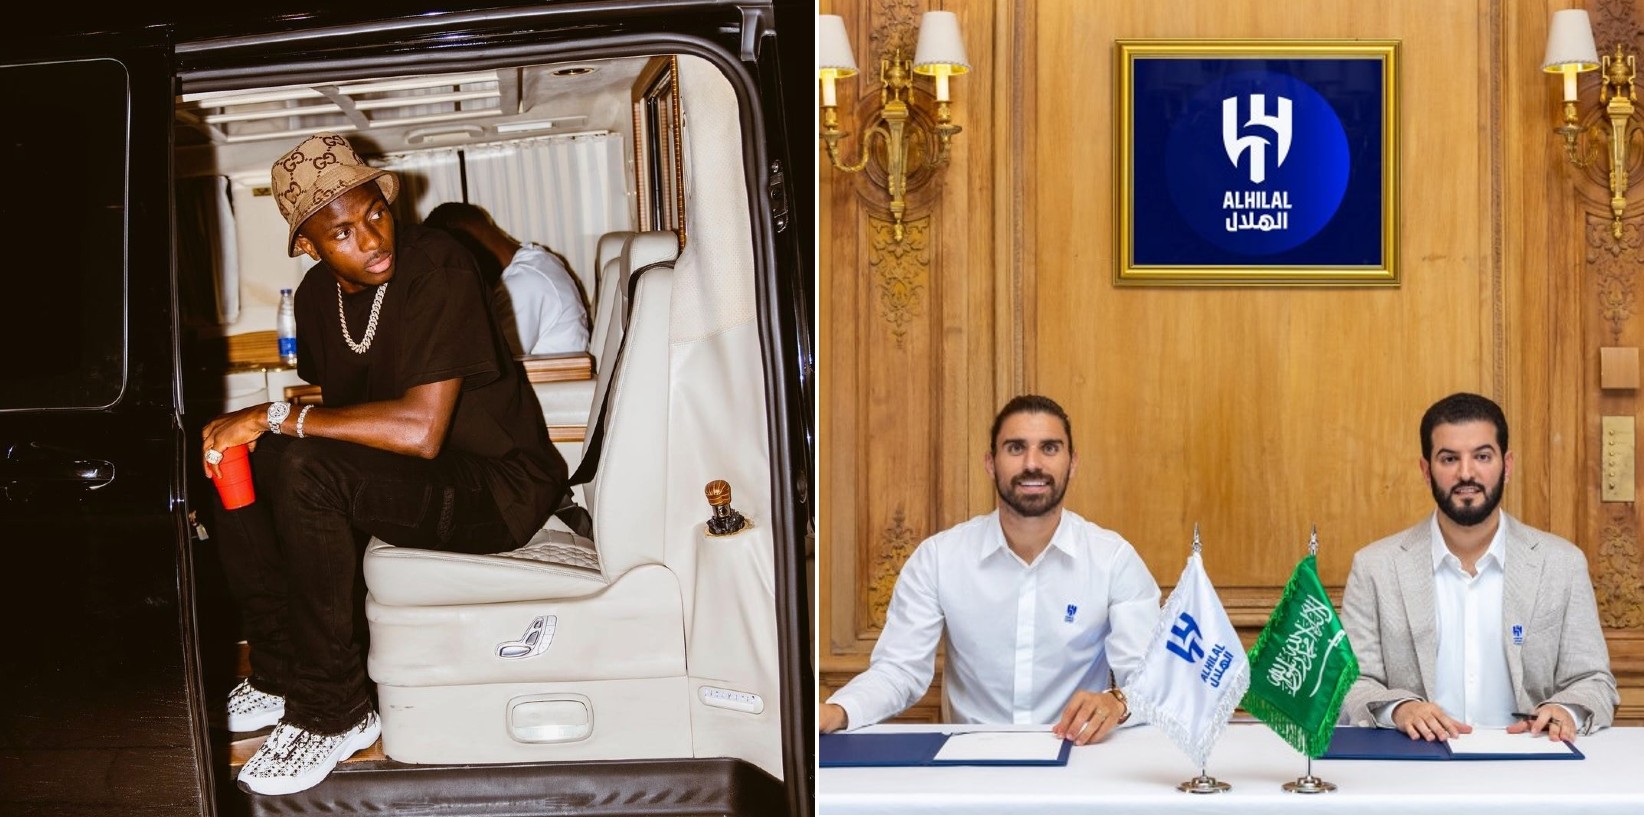 Secondo il quotidiano francese L'Equipe, gli arabi dell'Al-Hilal avrebbero fatto altre due offerte alla Società Sportiva Calcio Napoli per Victor Osimhen